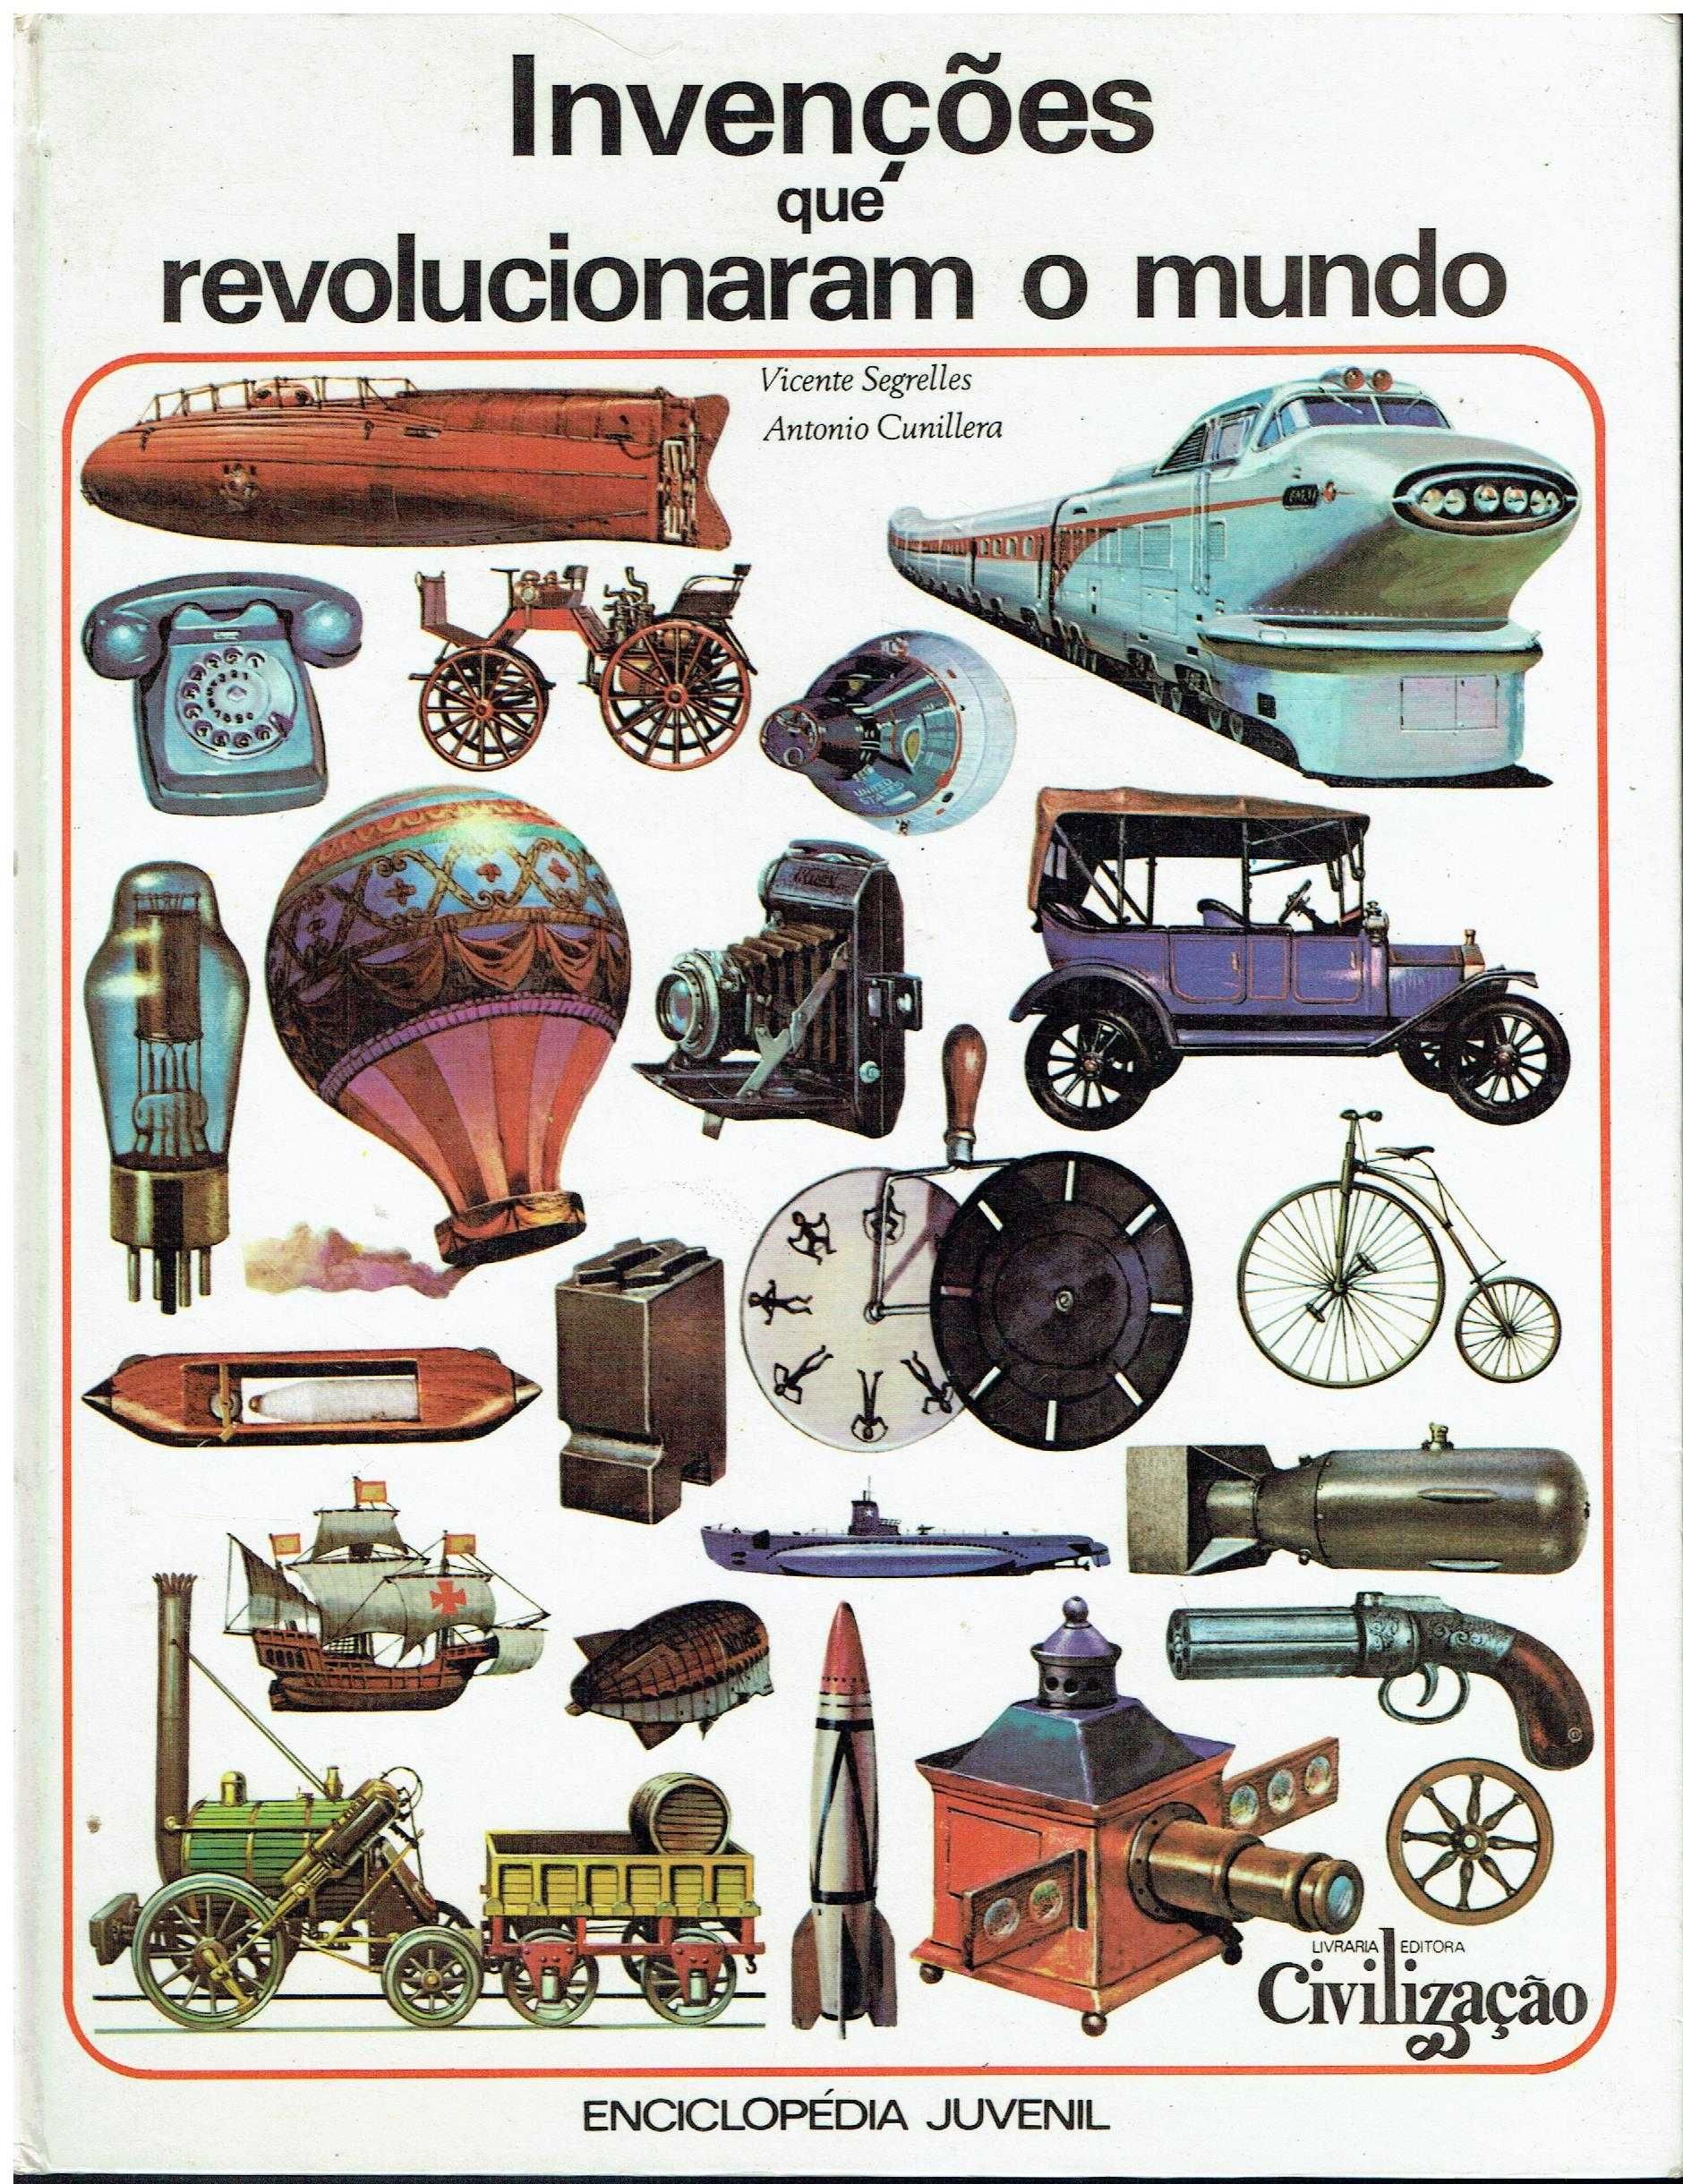 12248

Enciclopédia Juvenil
Editora Civilização